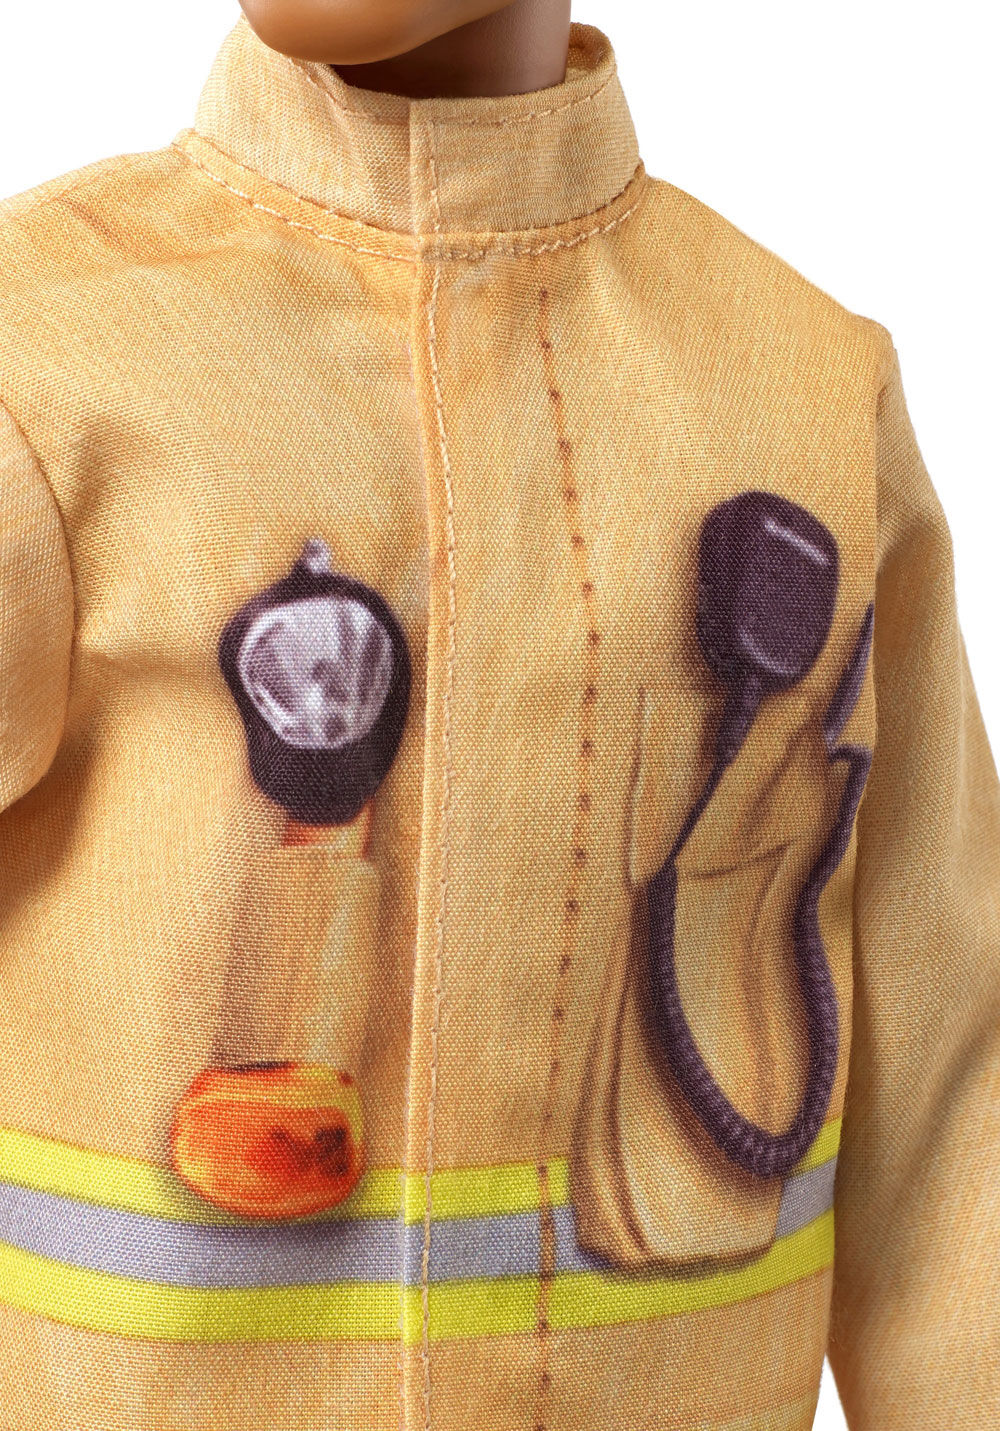 fireman ken doll